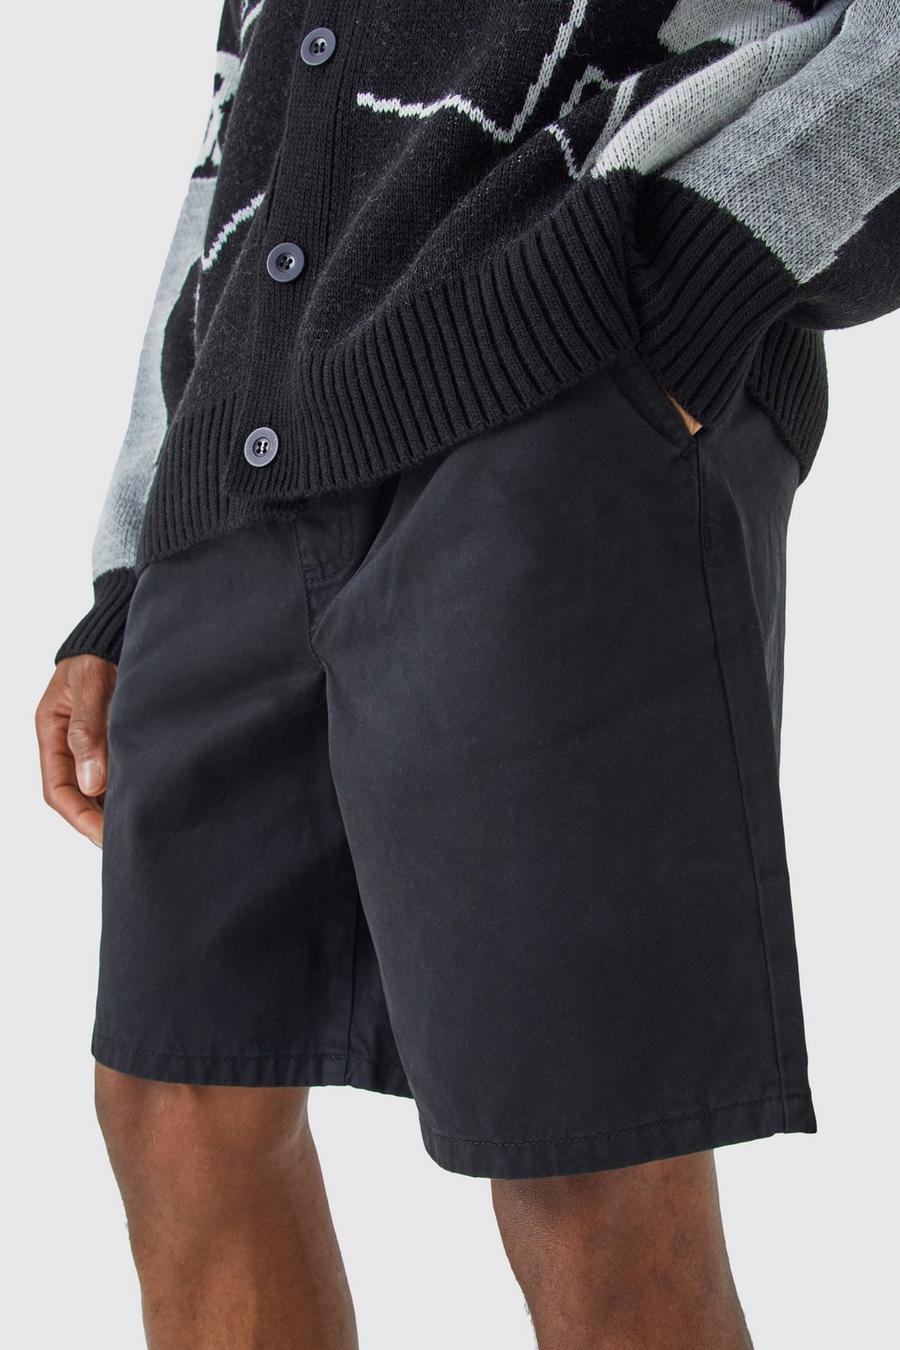 Lockere Shorts in Schwarz, Black